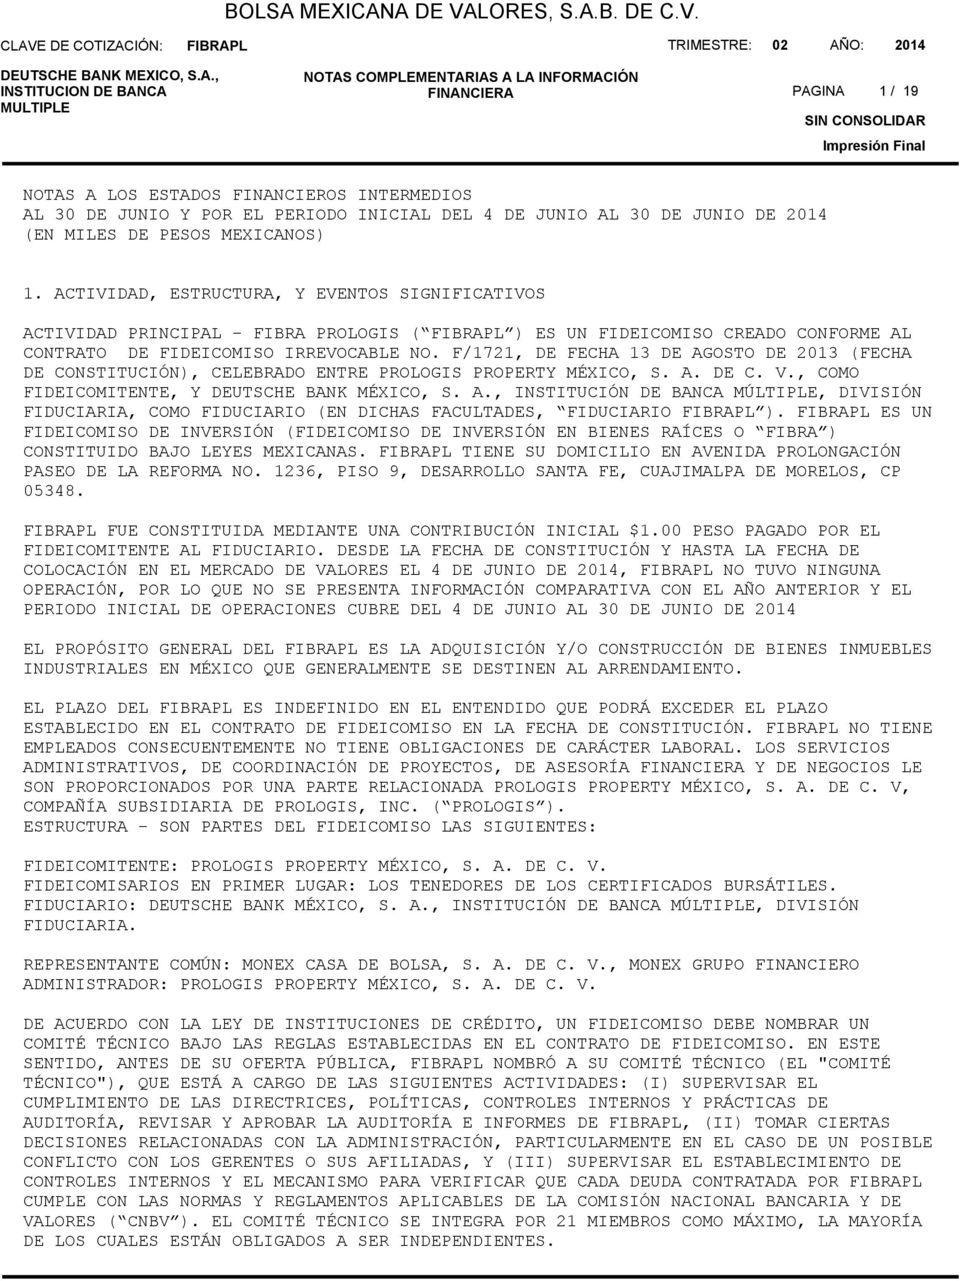 F/1721, DE FECHA 13 DE AGOSTO DE 213 (FECHA DE CONSTITUCIÓN), CELEBRADO ENTRE PROLOGIS PROPERTY MÉXICO, S. A. DE C. V., COMO FIDEICOMITENTE, Y DEUTSCHE BANK MÉXICO, S. A., INSTITUCIÓN DE BANCA MÚLTIPLE, DIVISIÓN FIDUCIARIA, COMO FIDUCIARIO (EN DICHAS FACULTADES, FIDUCIARIO ).